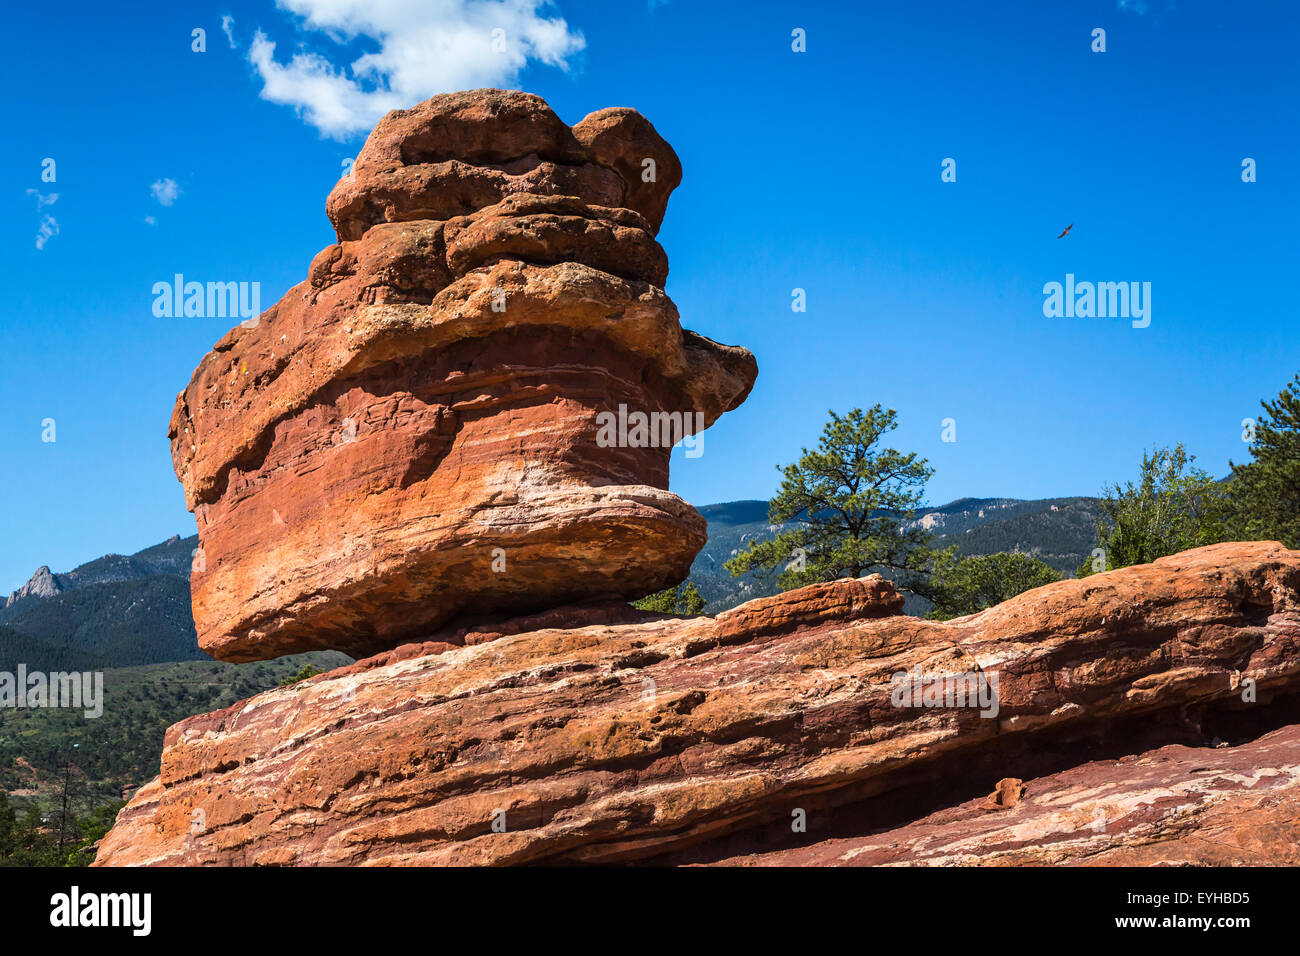 Balanced Rock in the Garden of the Gods National Natural Landmark near Colorado springs, Colorado, USA. Stock Photo